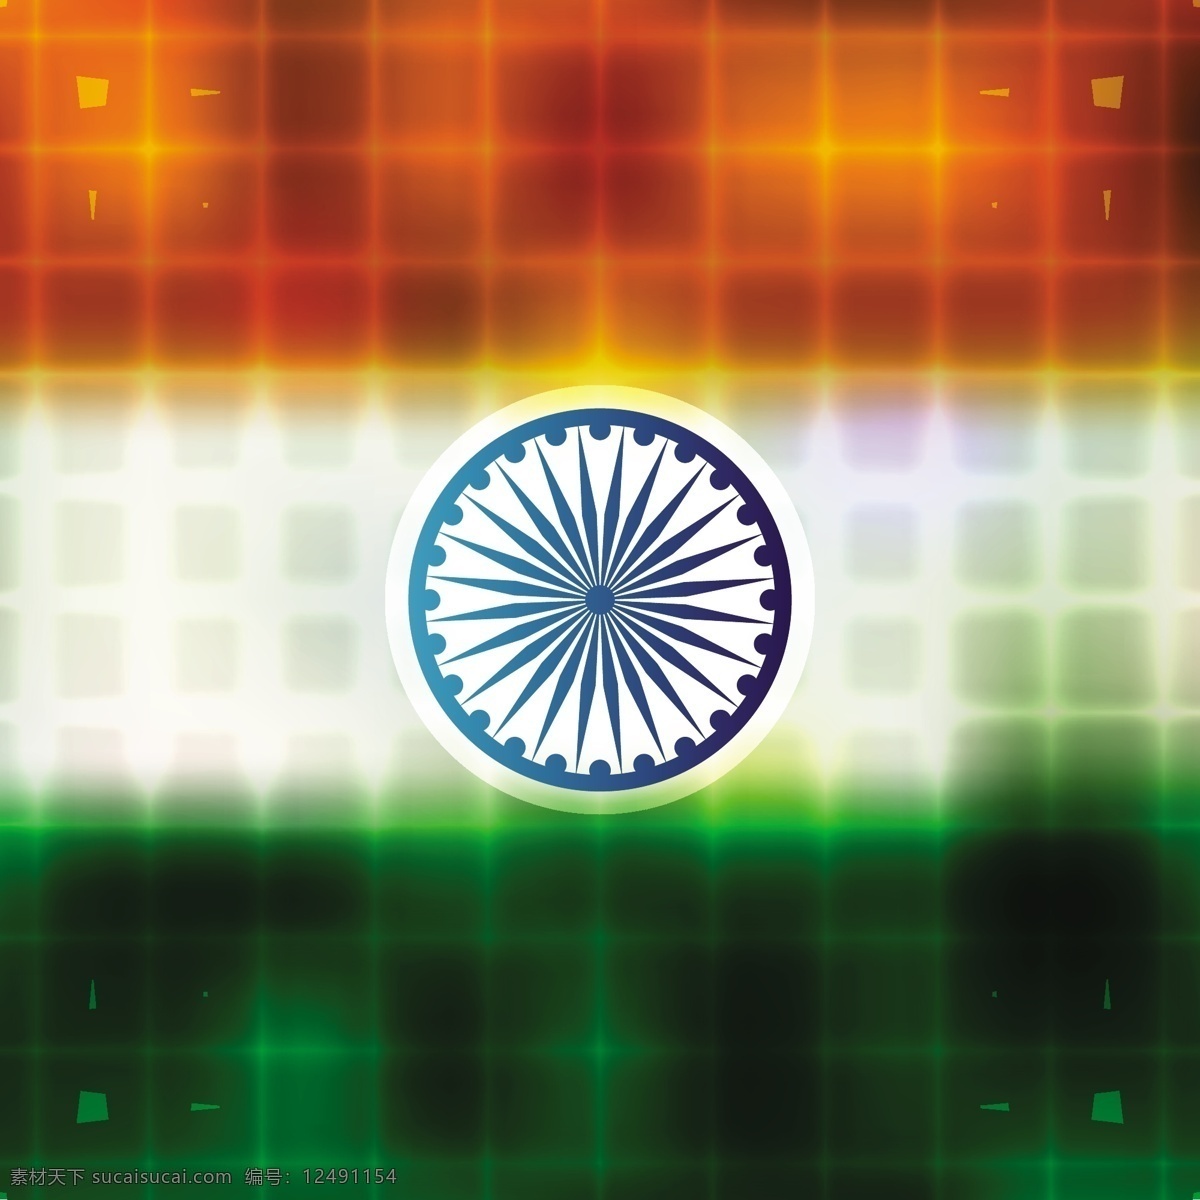 闪亮 印度 国旗 背景 抽象 节日 车轮 和平 印度国旗 独立日 国家 自由 日 政府 有光泽 爱国 一月 独立 红色